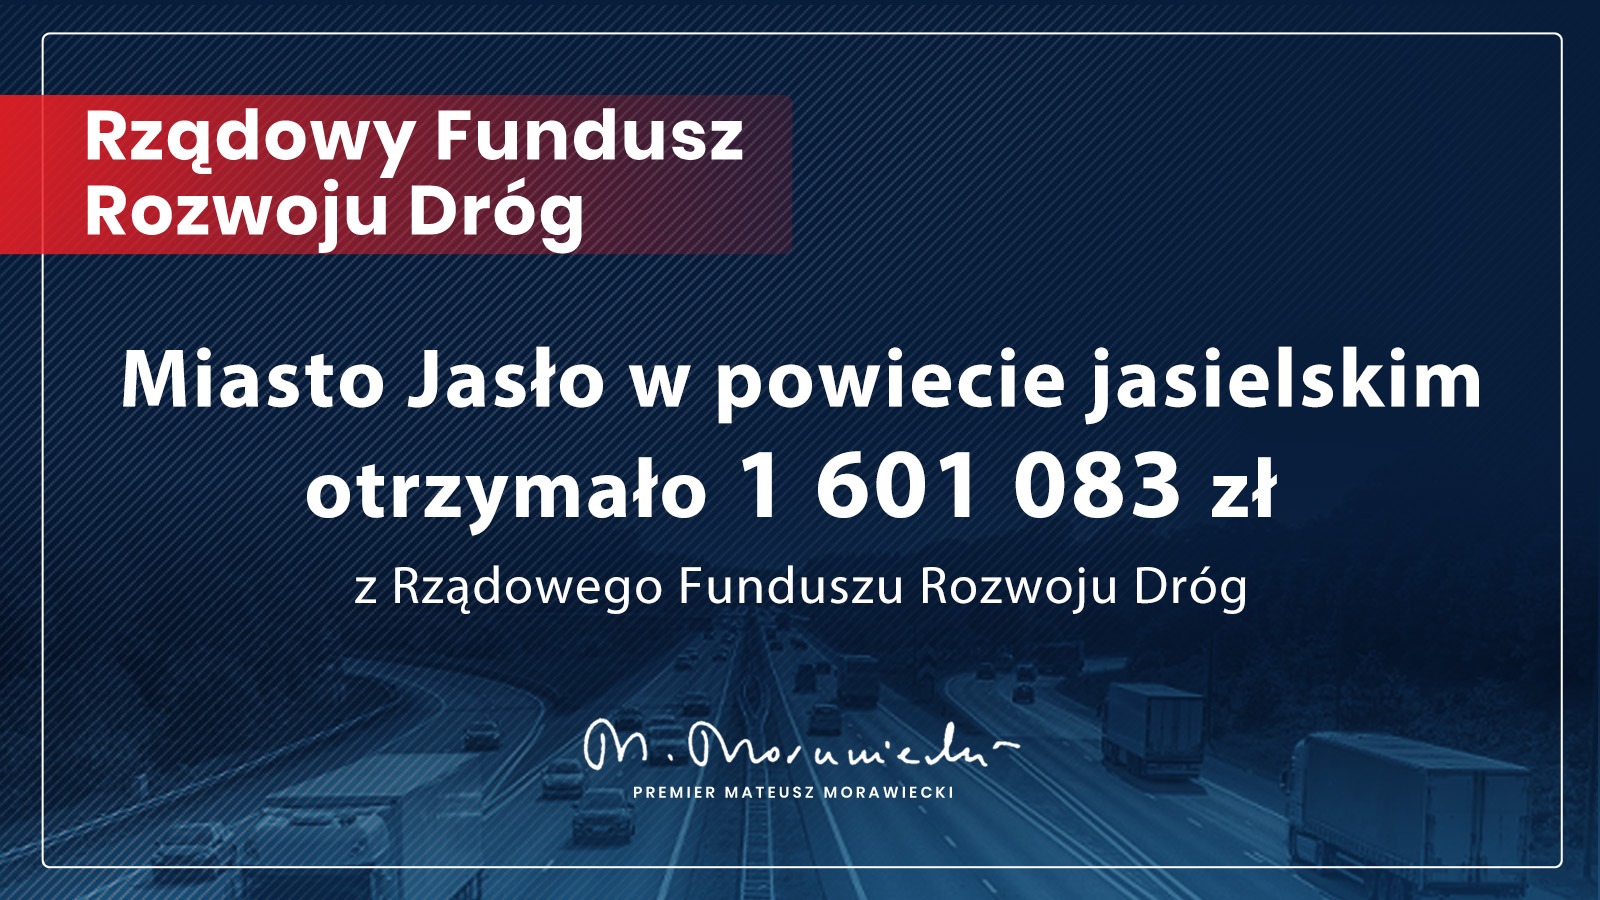 Miasto Jasło otrzymało 1 601 083 zł w ramach Rządowego Funduszu Rozwoju Dróg